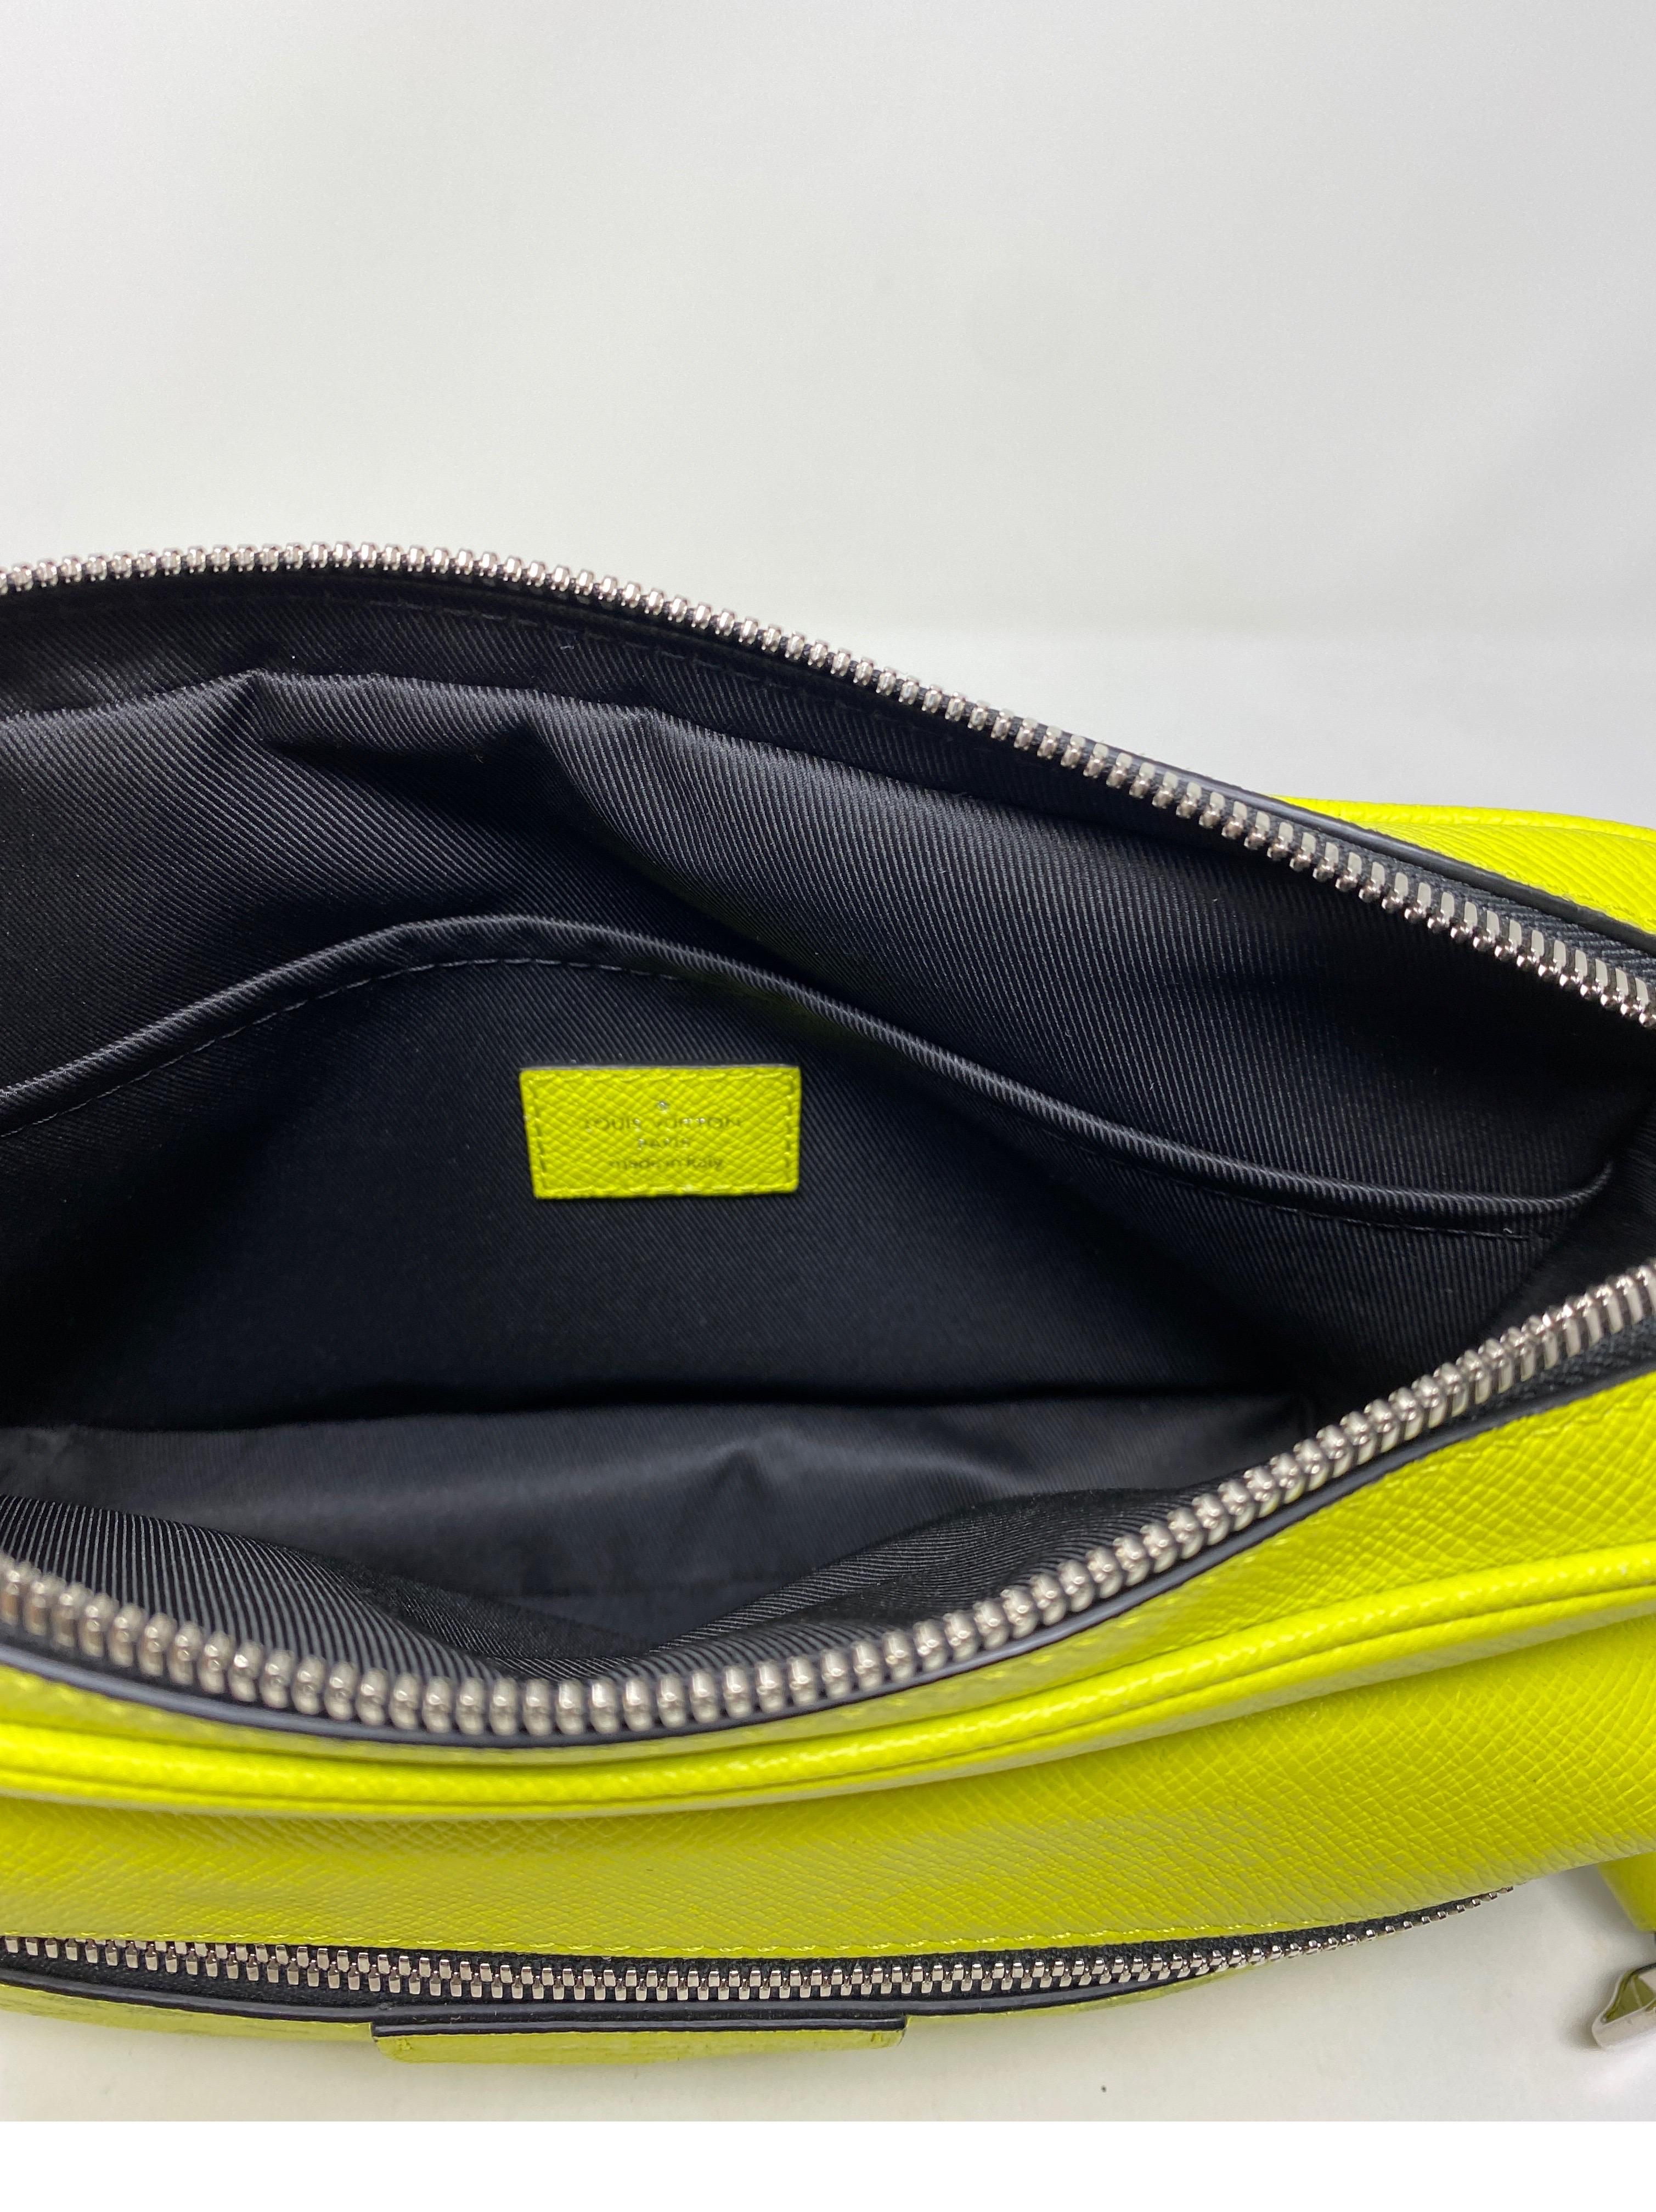 Louis Vuitton Yellow Taigarama Monogram Outdoor Bag 8